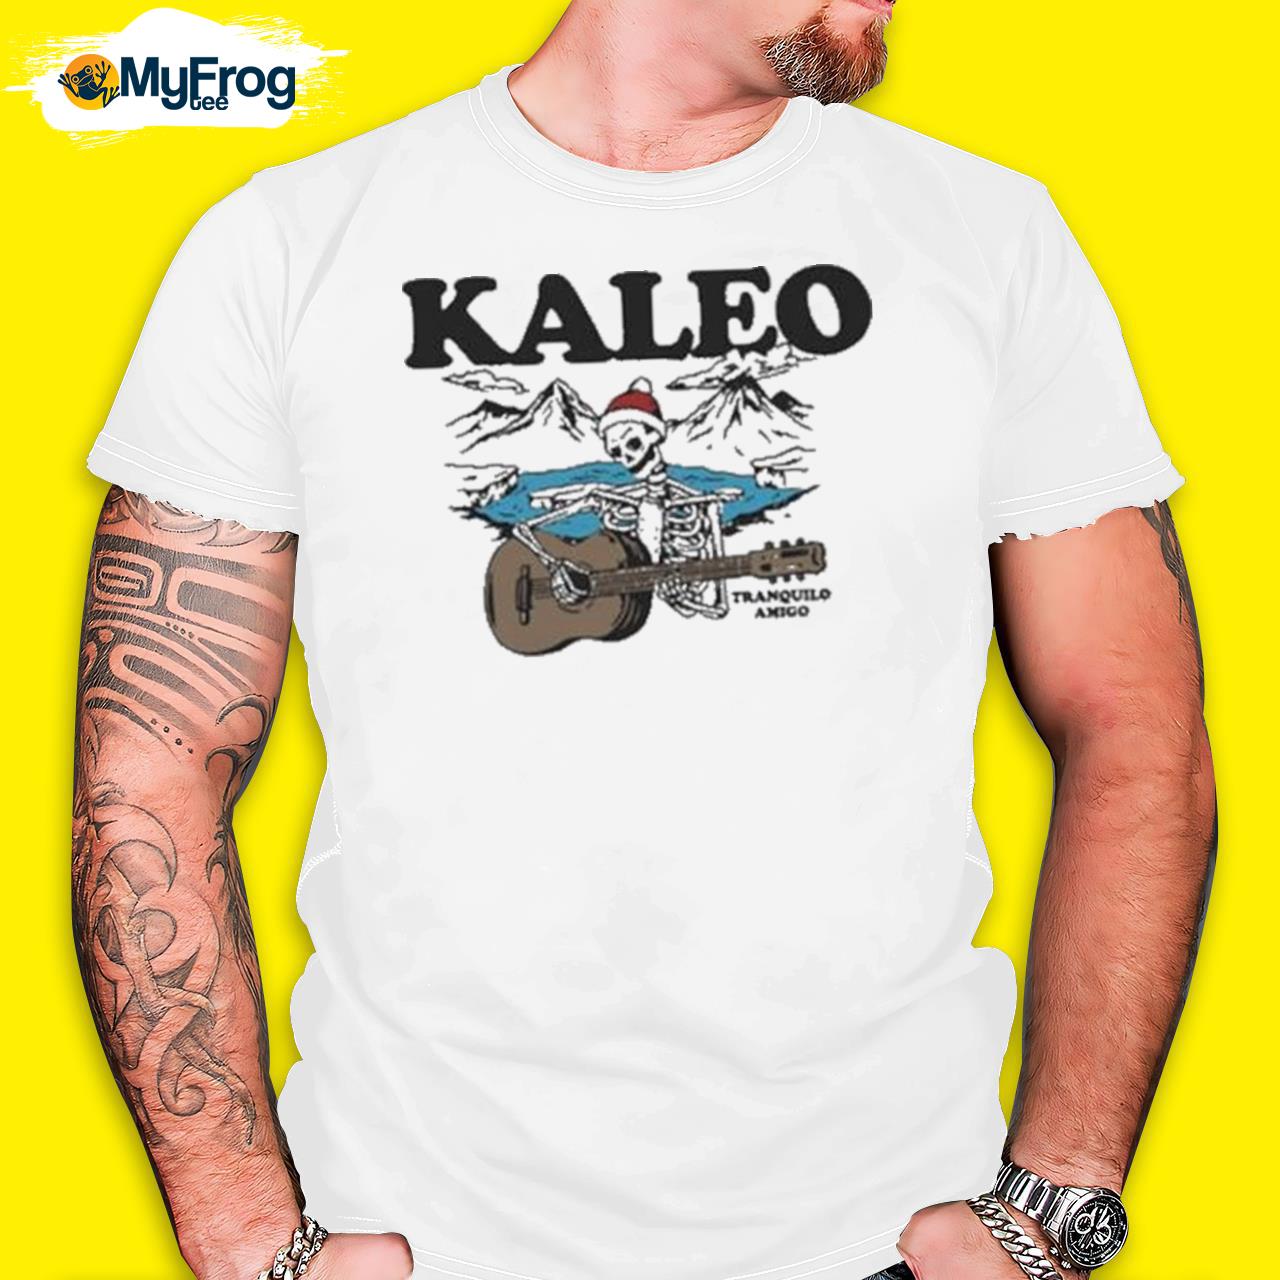 The Kaleo Holiday Tranquilo Amigo Classic Shirt